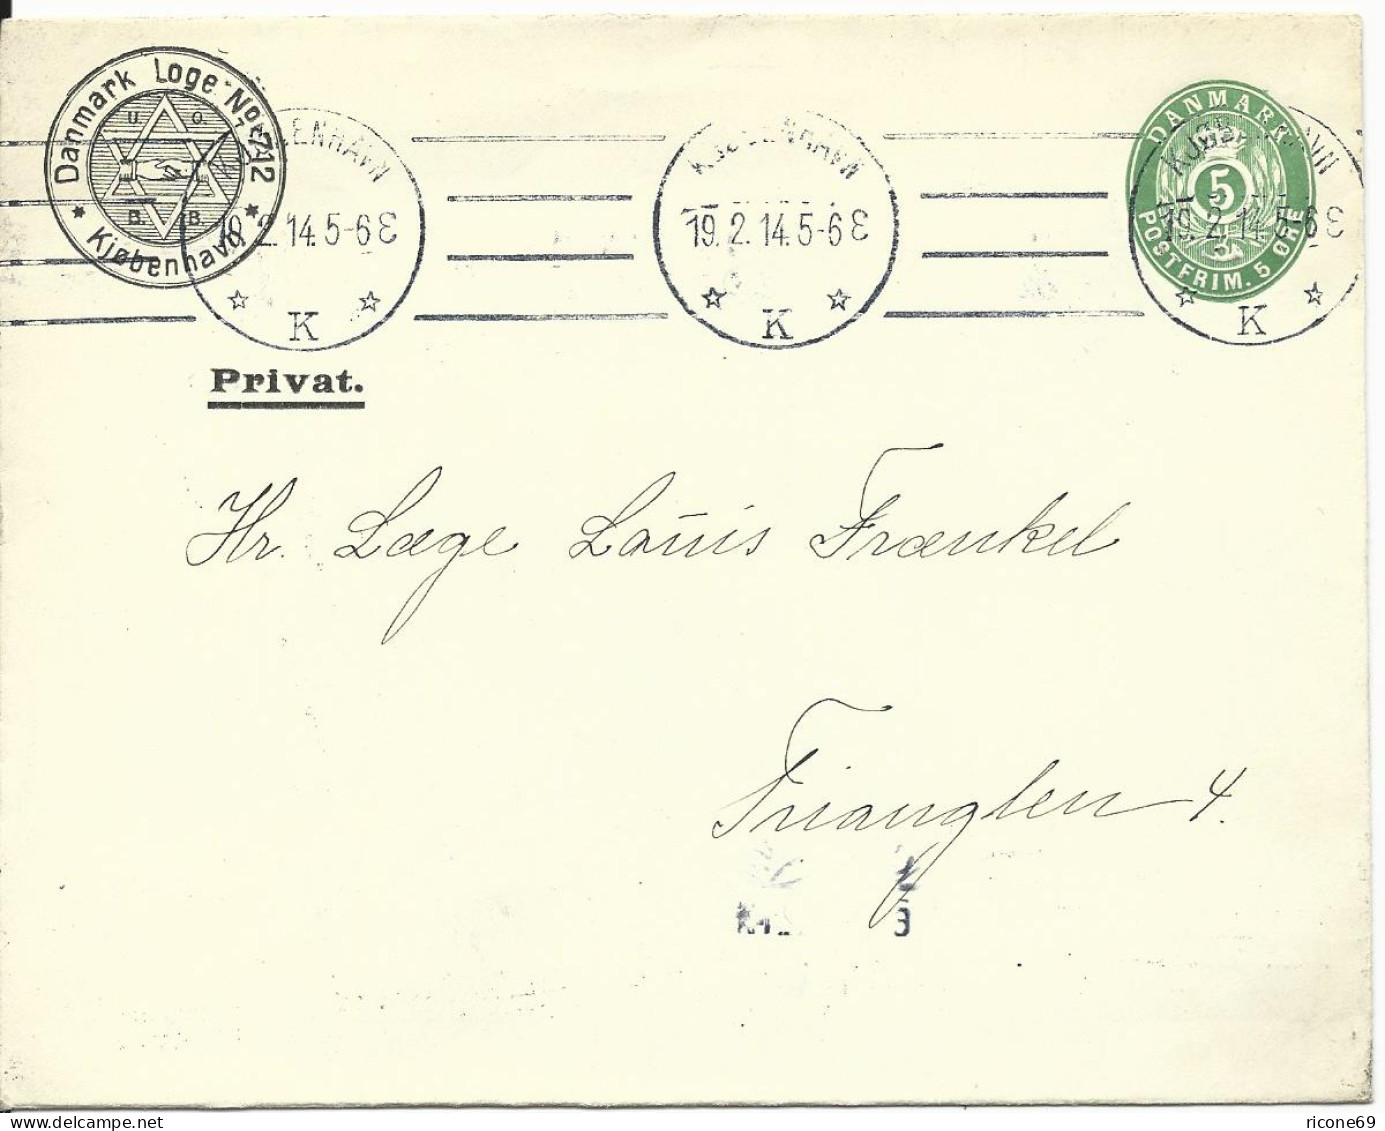 Dänemark 1914, 5 öre Ganzsache Brief M. Danmark Loge No.712 Judaika Zudruck - Guidaismo